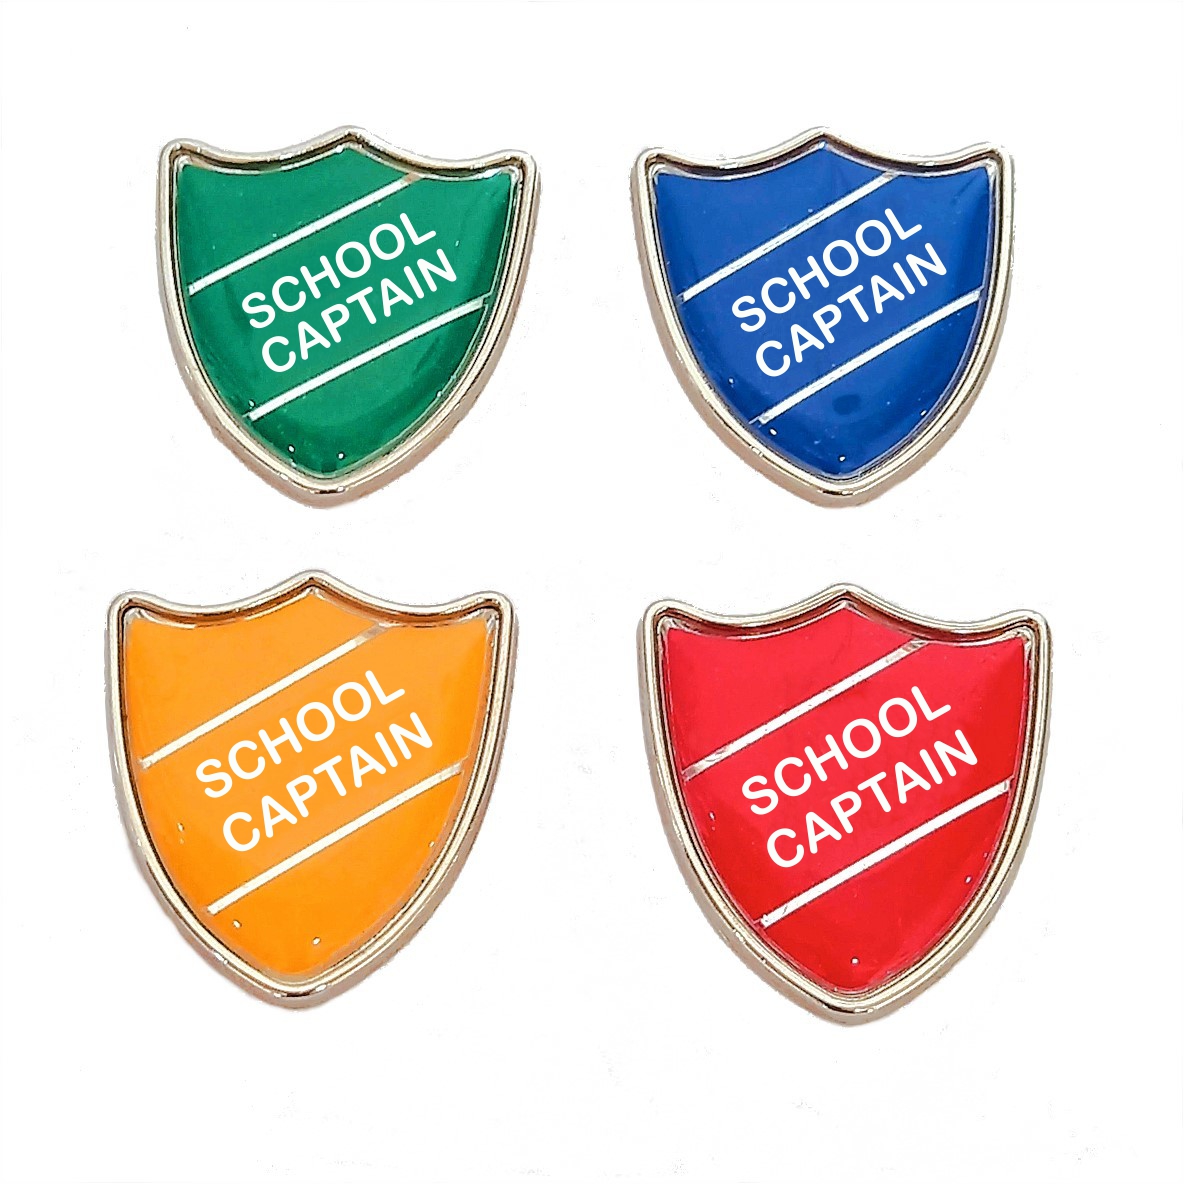 SCHOOL CAPTAIN shield badge